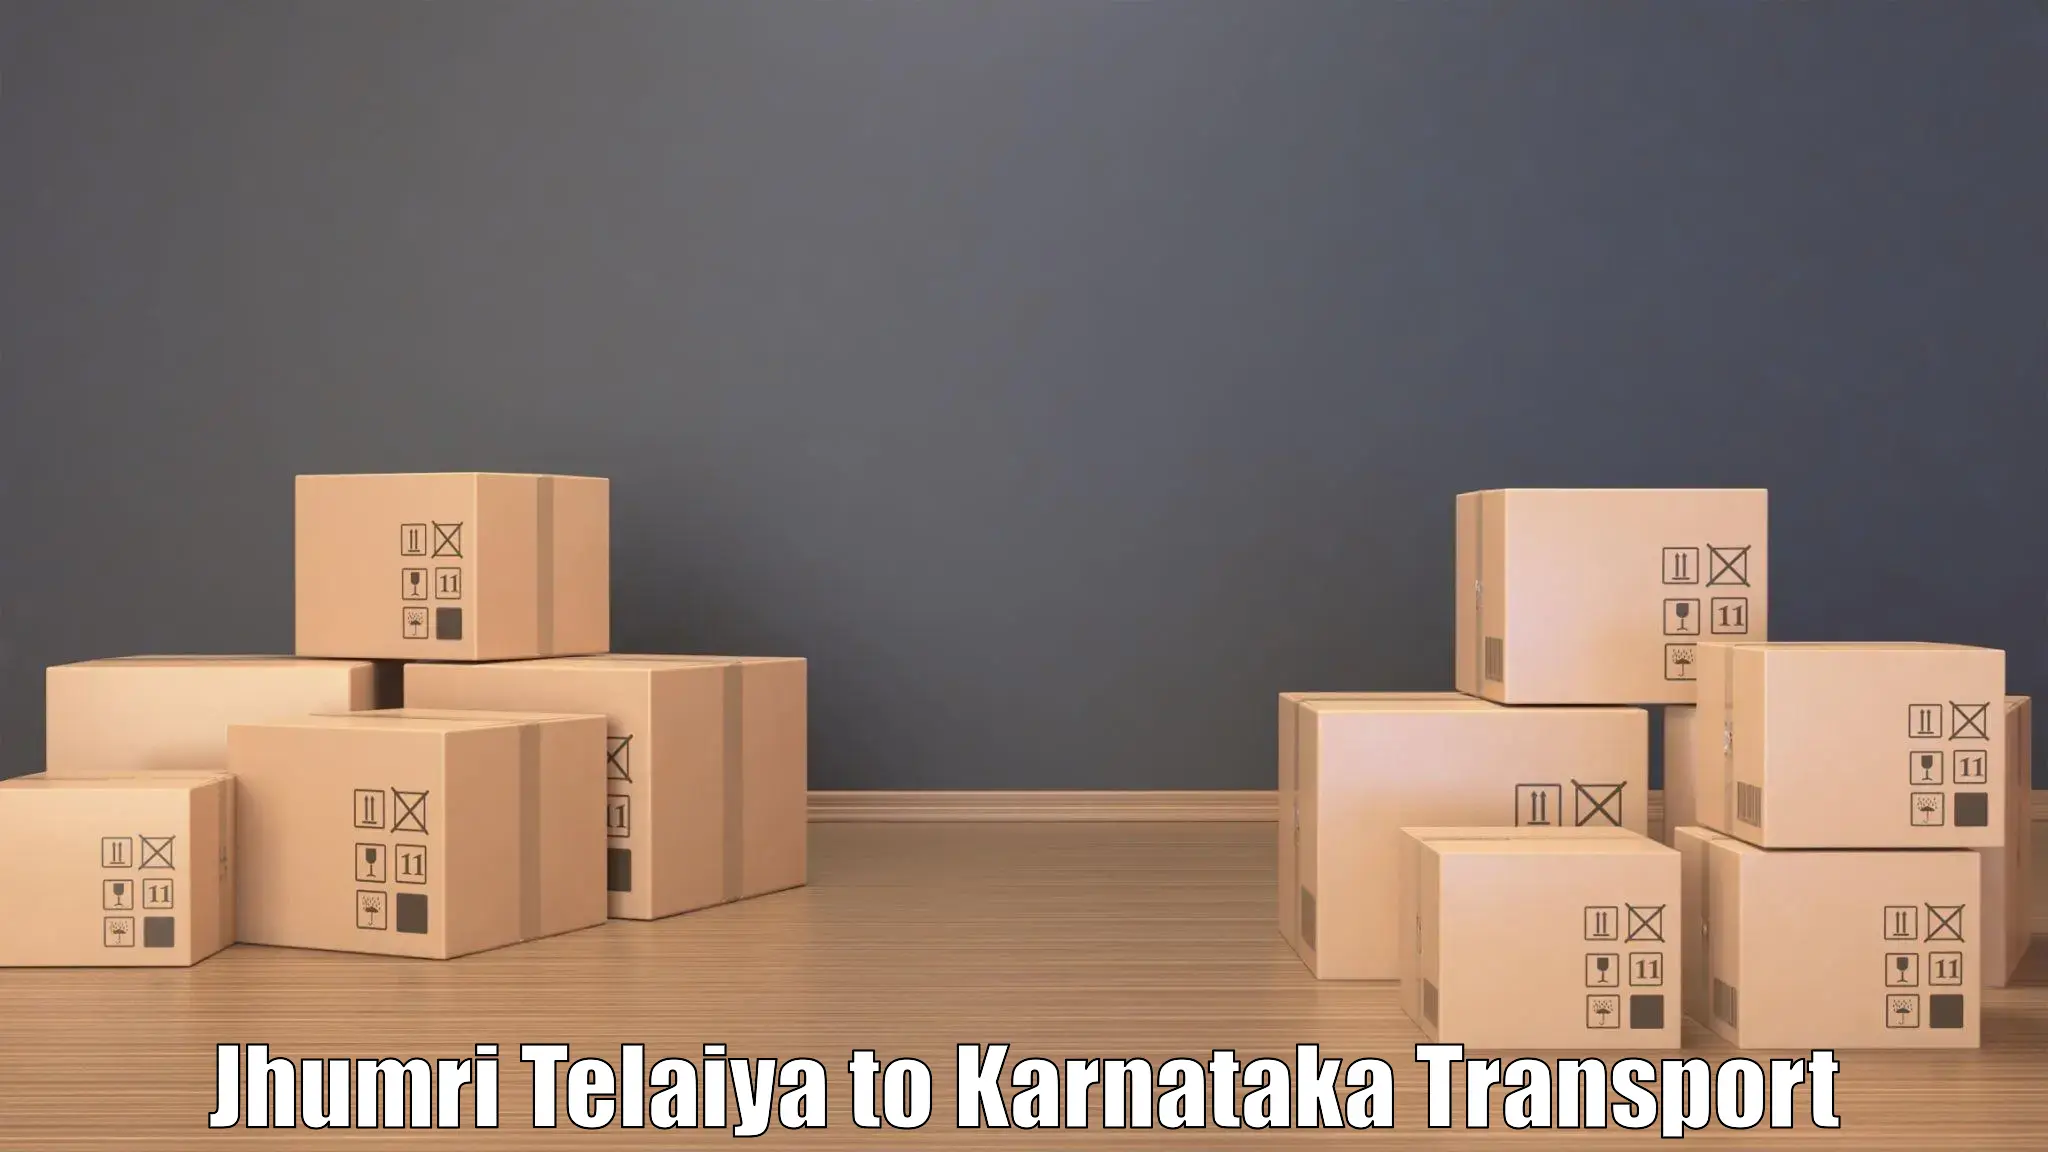 Road transport online services Jhumri Telaiya to Nelamangala